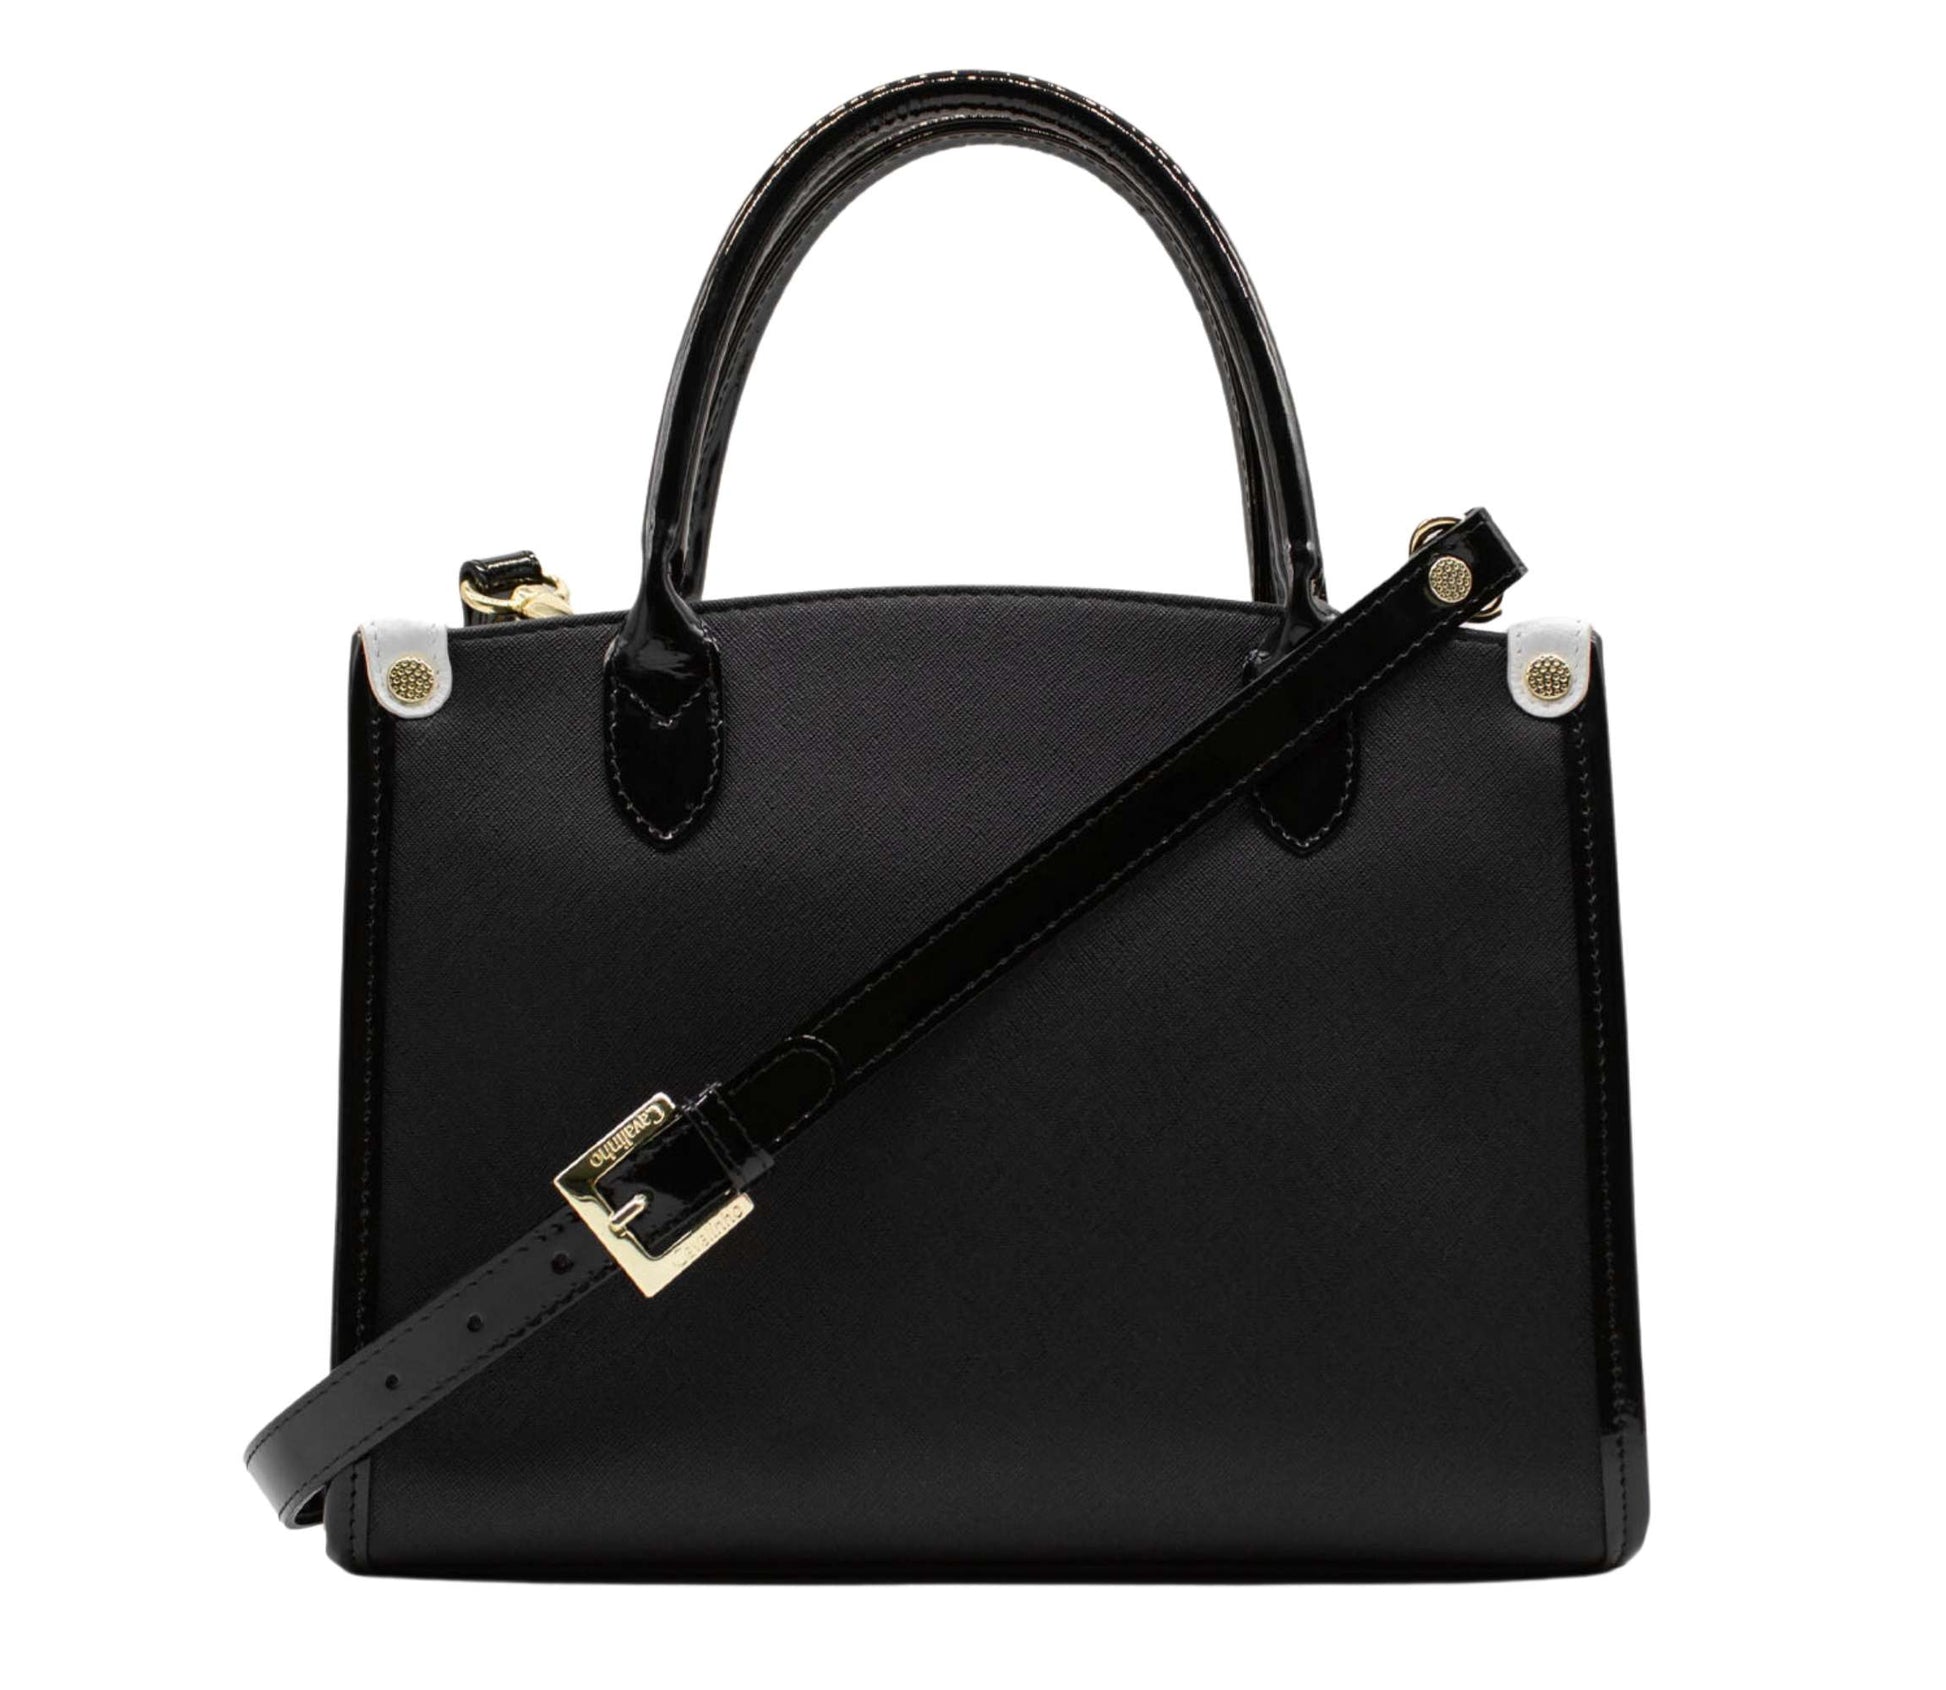 Cavalinho Royal Handbag - Black and White - 18390480.21.99_3